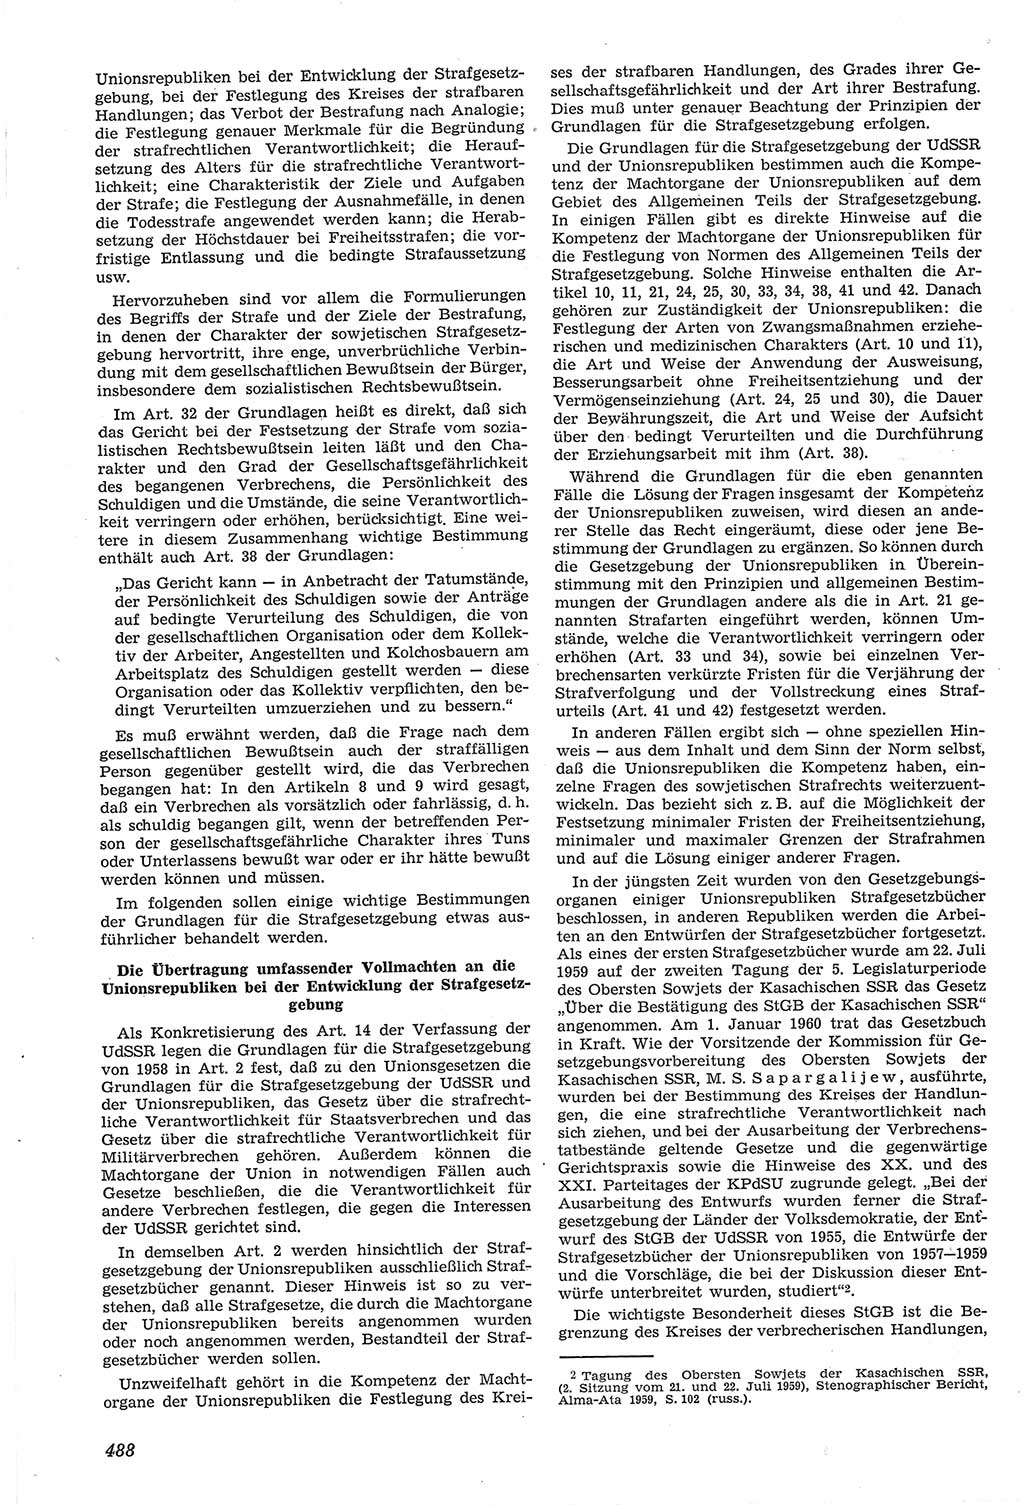 Neue Justiz (NJ), Zeitschrift für Recht und Rechtswissenschaft [Deutsche Demokratische Republik (DDR)], 14. Jahrgang 1960, Seite 488 (NJ DDR 1960, S. 488)